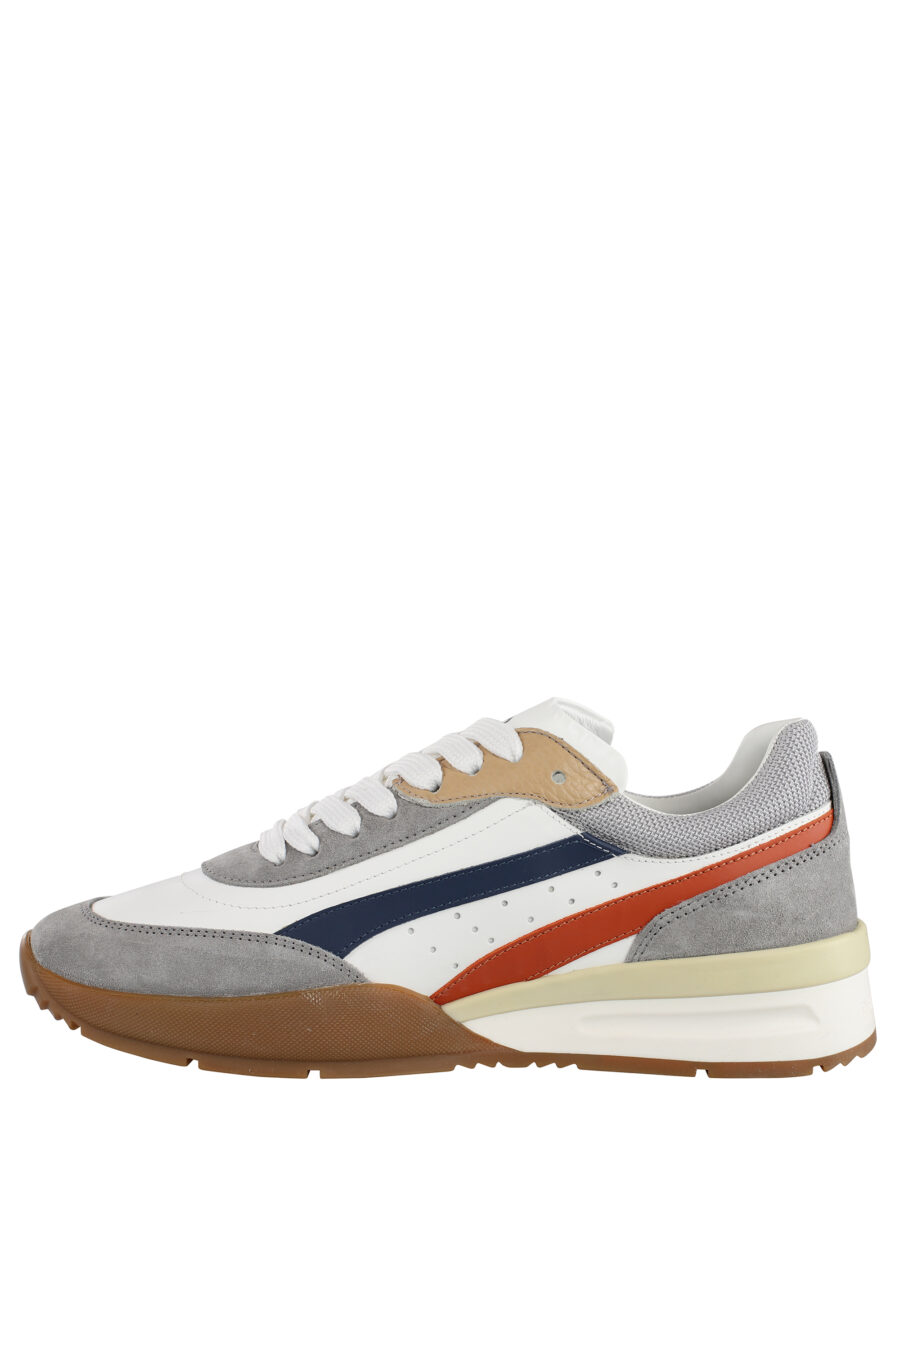 Zapatillas blancas y grises con detalles multicolor y suela marrón - IMG 7151